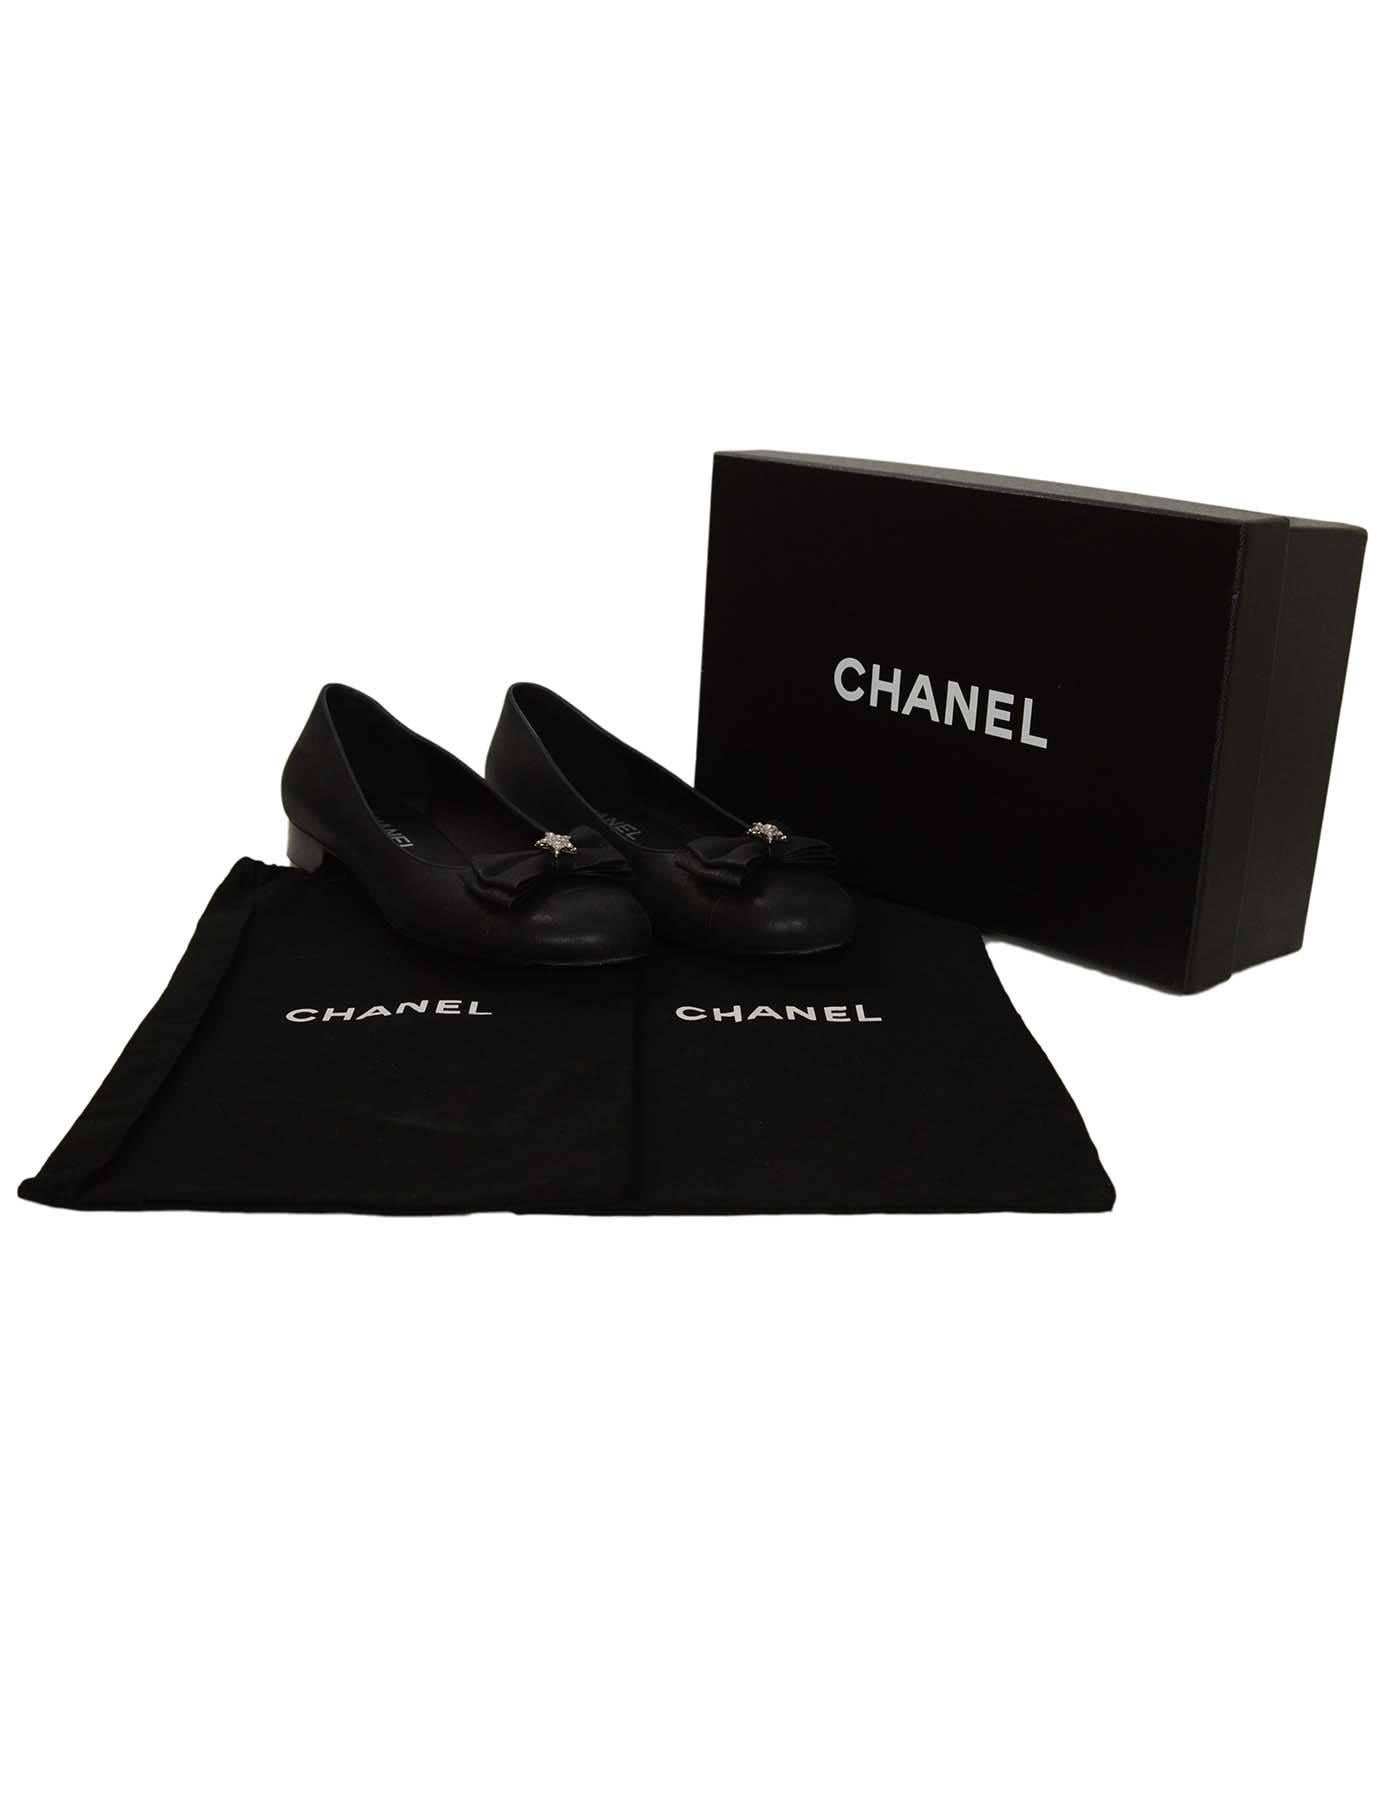 Chanel Black Iridescent Calfskin Flats sz 38 4